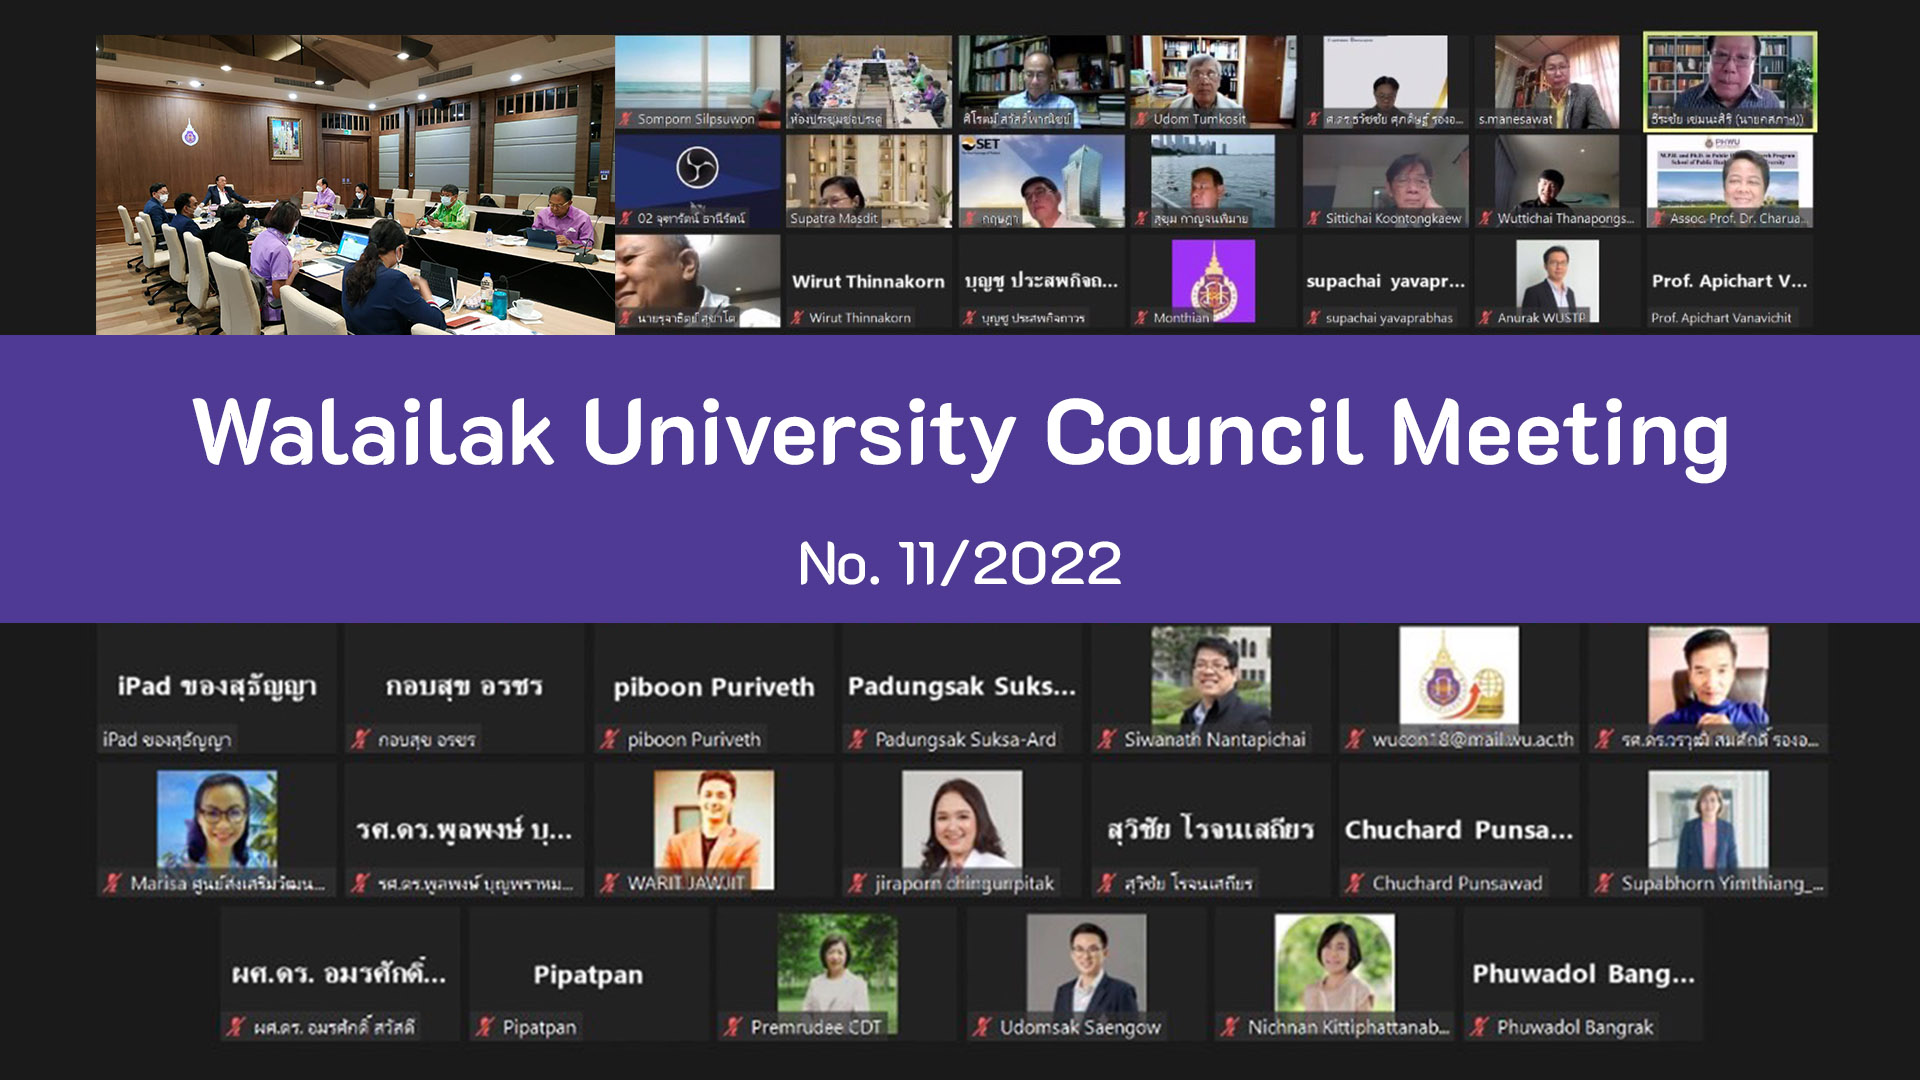 Walailak University Council Meeting No. 11/2022